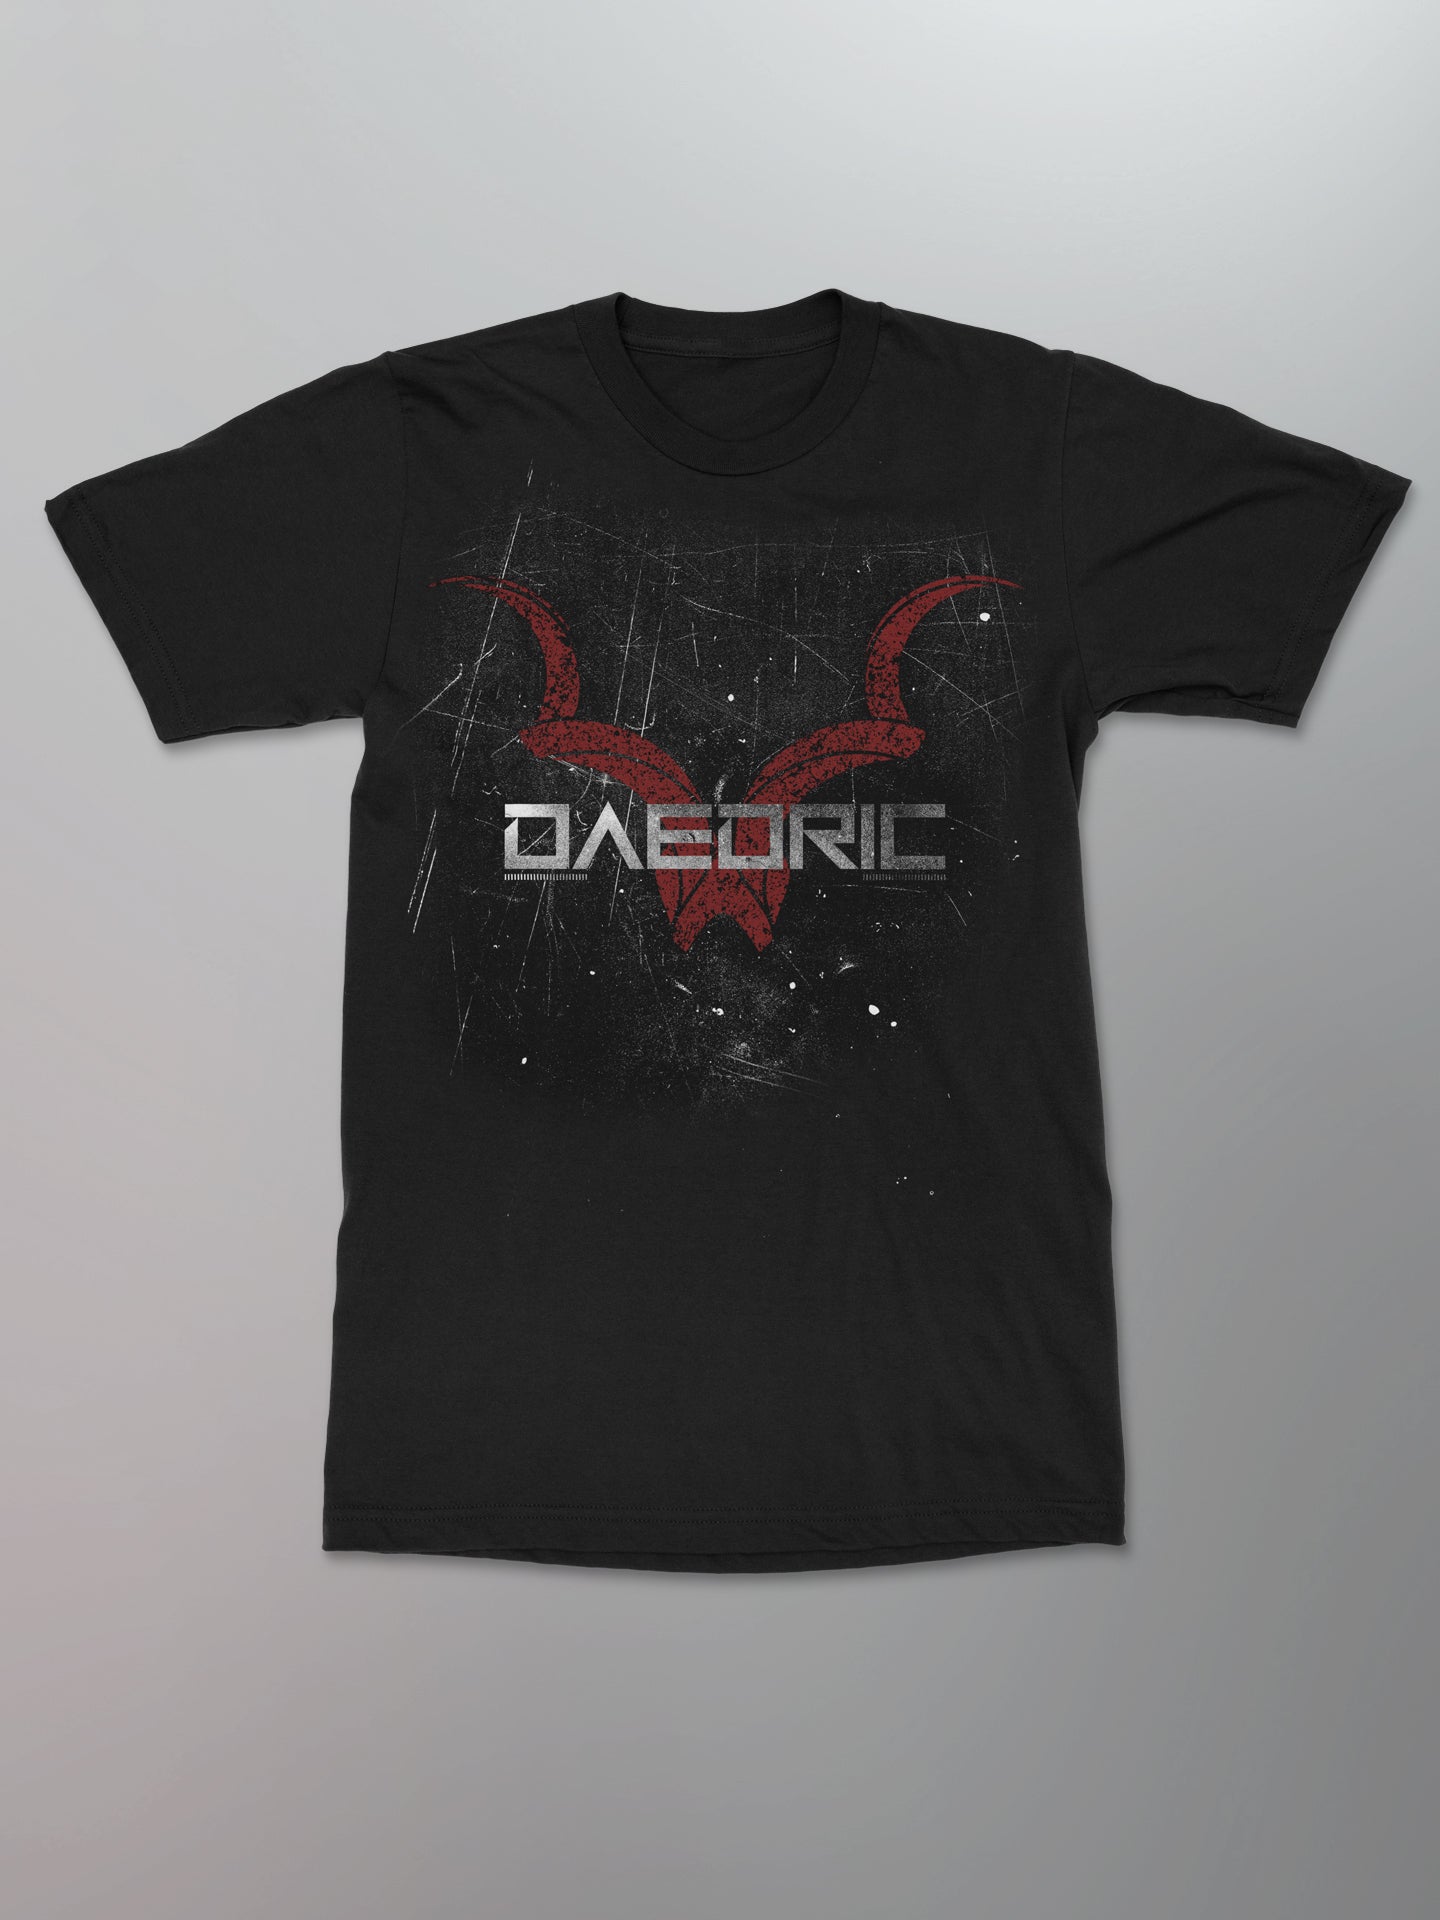 Daedric - Eroded Logo Shirt